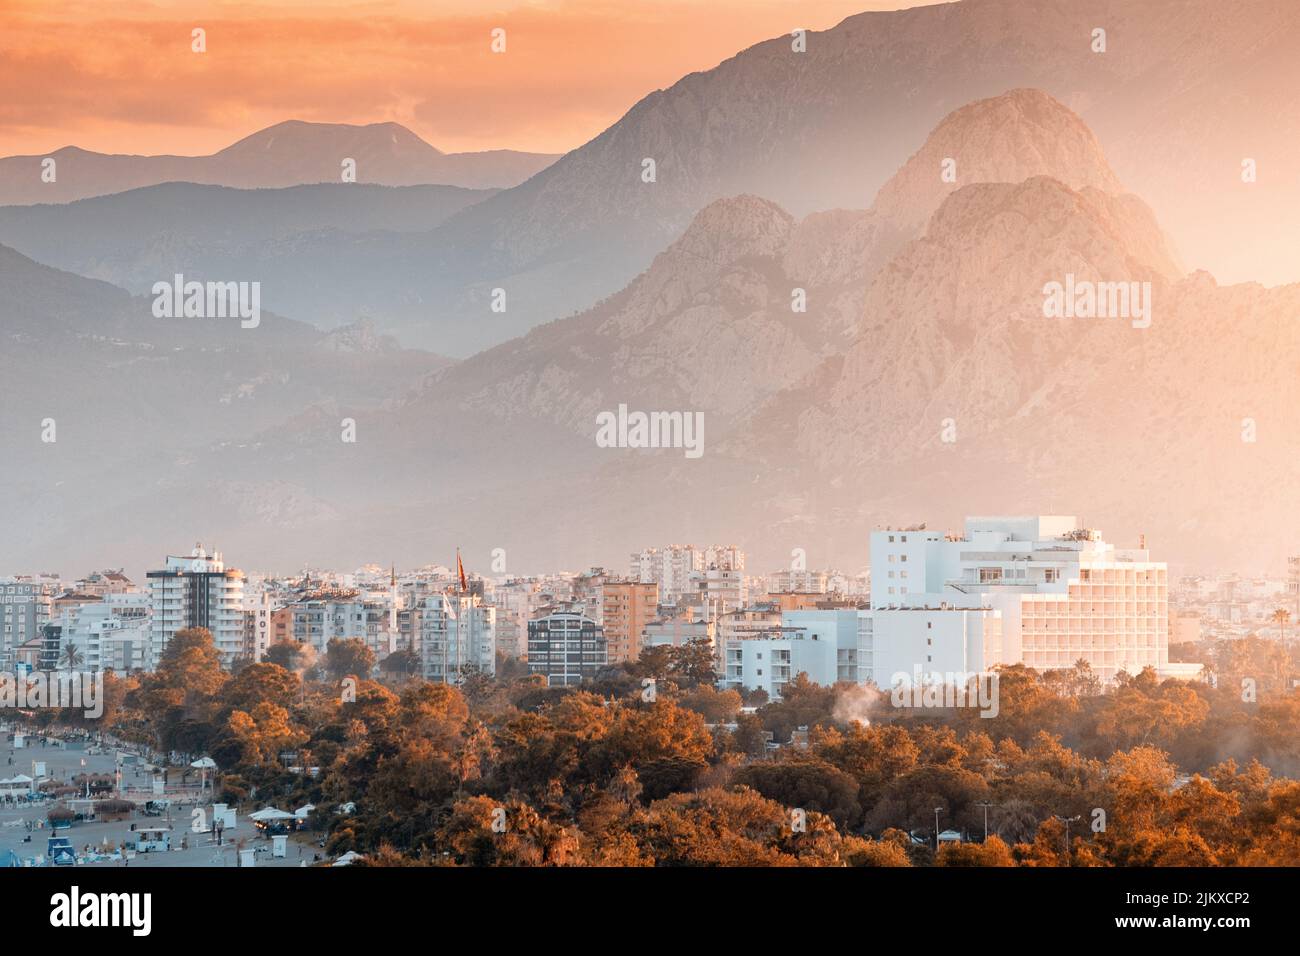 Zoom distante vista del paisaje urbano de la ciudad turística de Antalya con hoteles y edificios y las montañas Tauro en el fondo Foto de stock